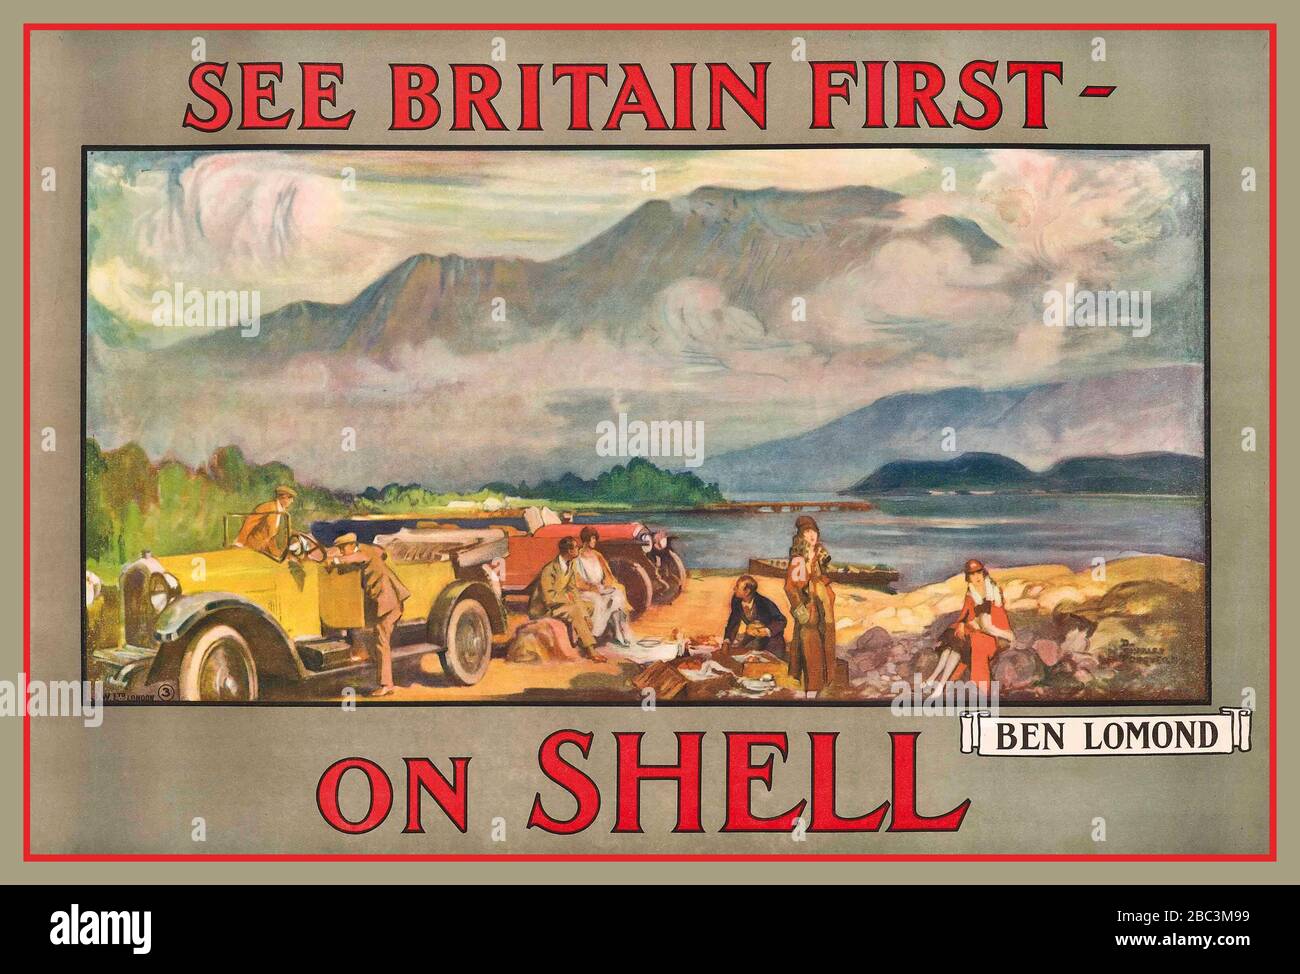 1925 shell immagini e fotografie stock ad alta risoluzione - Alamy